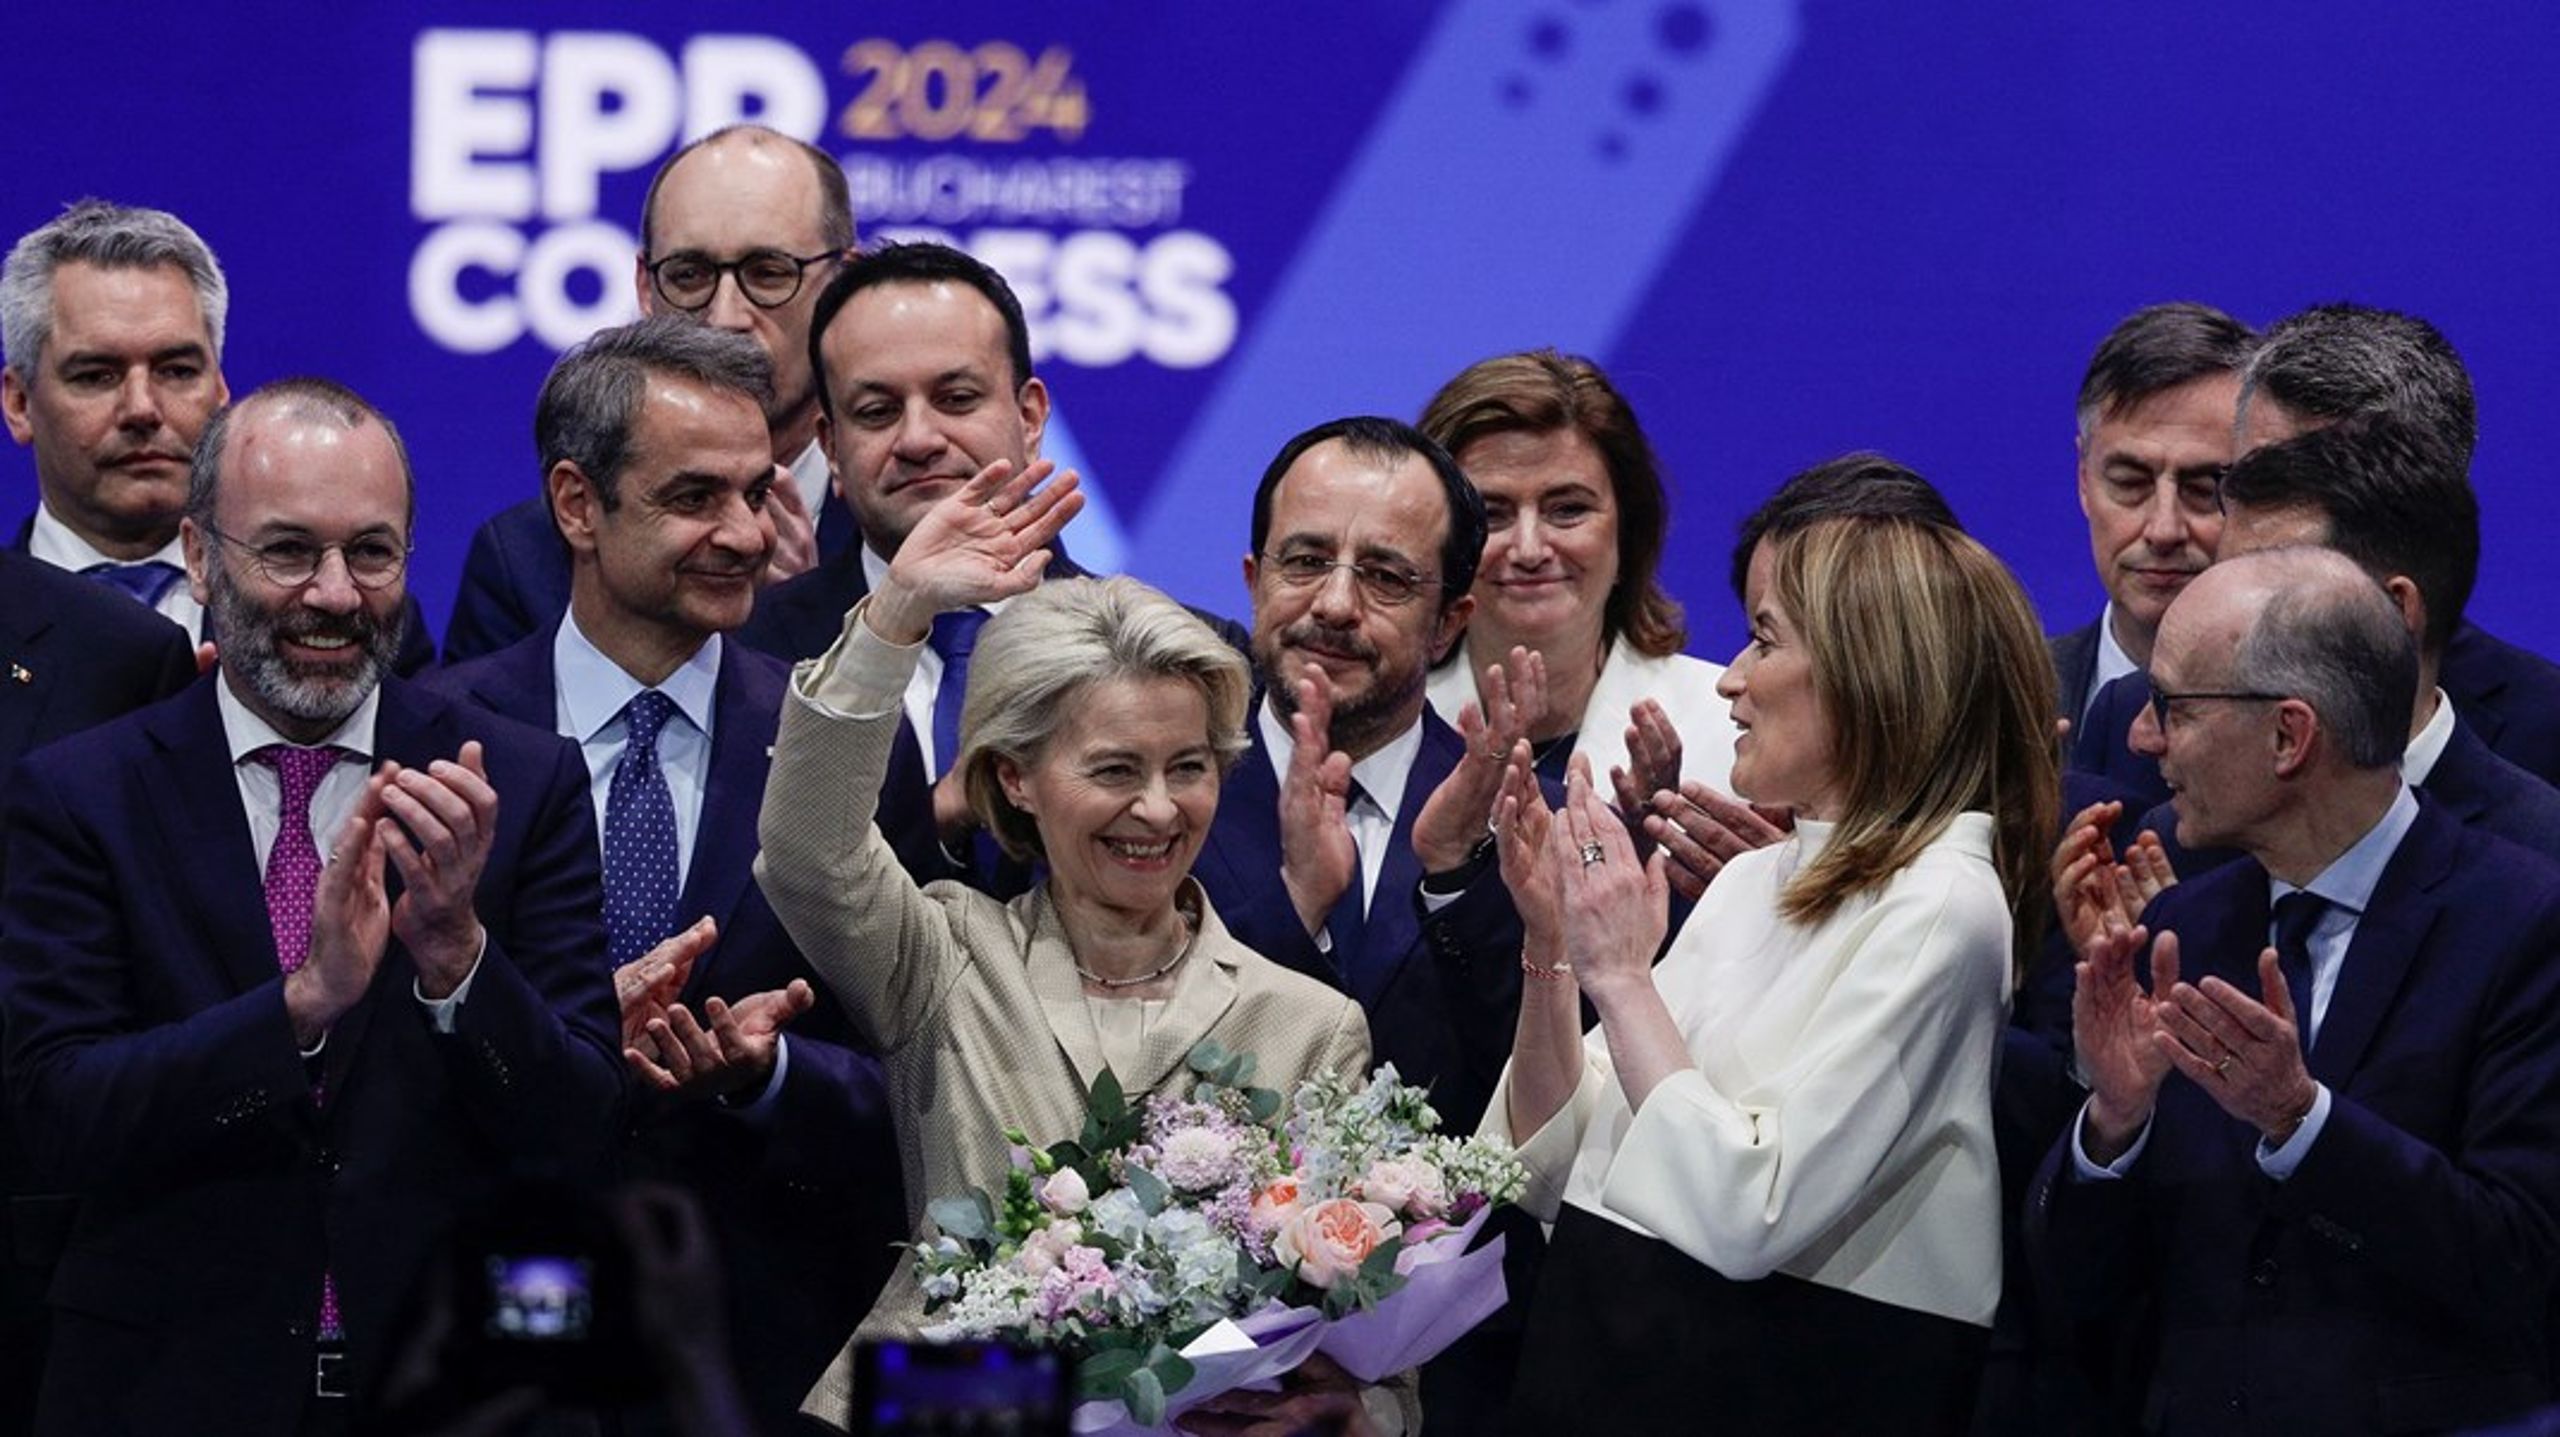 Den kristendemokratiske og liberalkonservative partigruppen European People's Party ser gjerne at Ursula von der Leyen fortsetter som EU-kommisjonens president i neste mandatperiode.